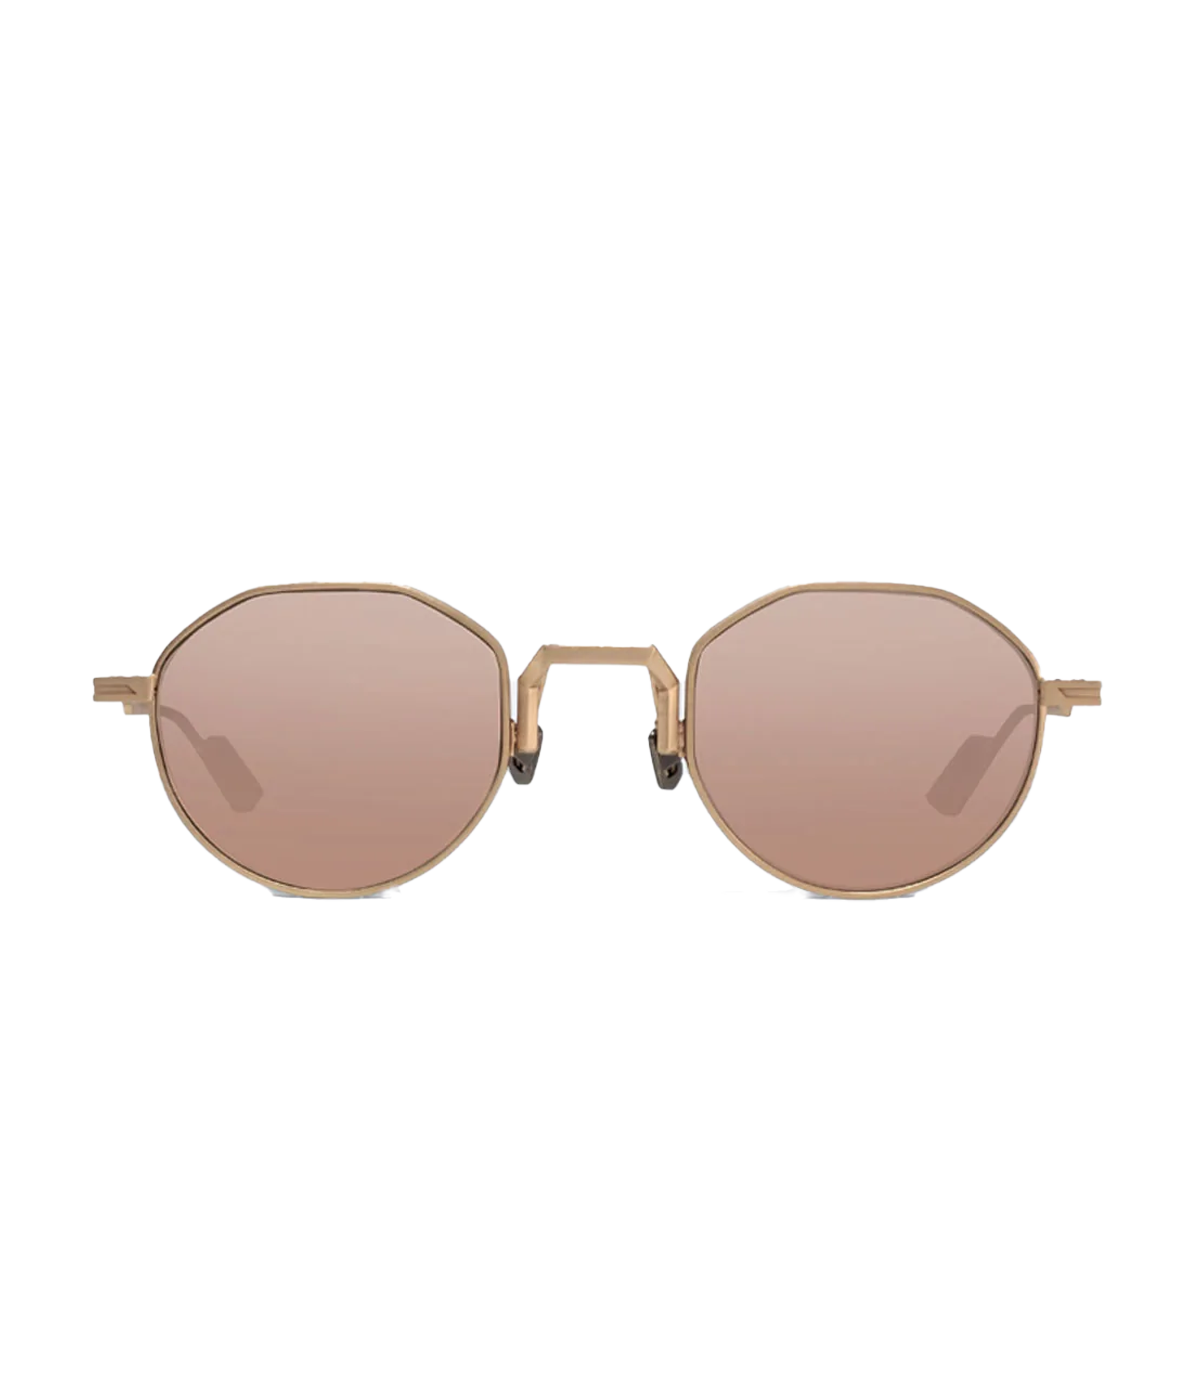 Bruno Sunglasses in Rose Gold